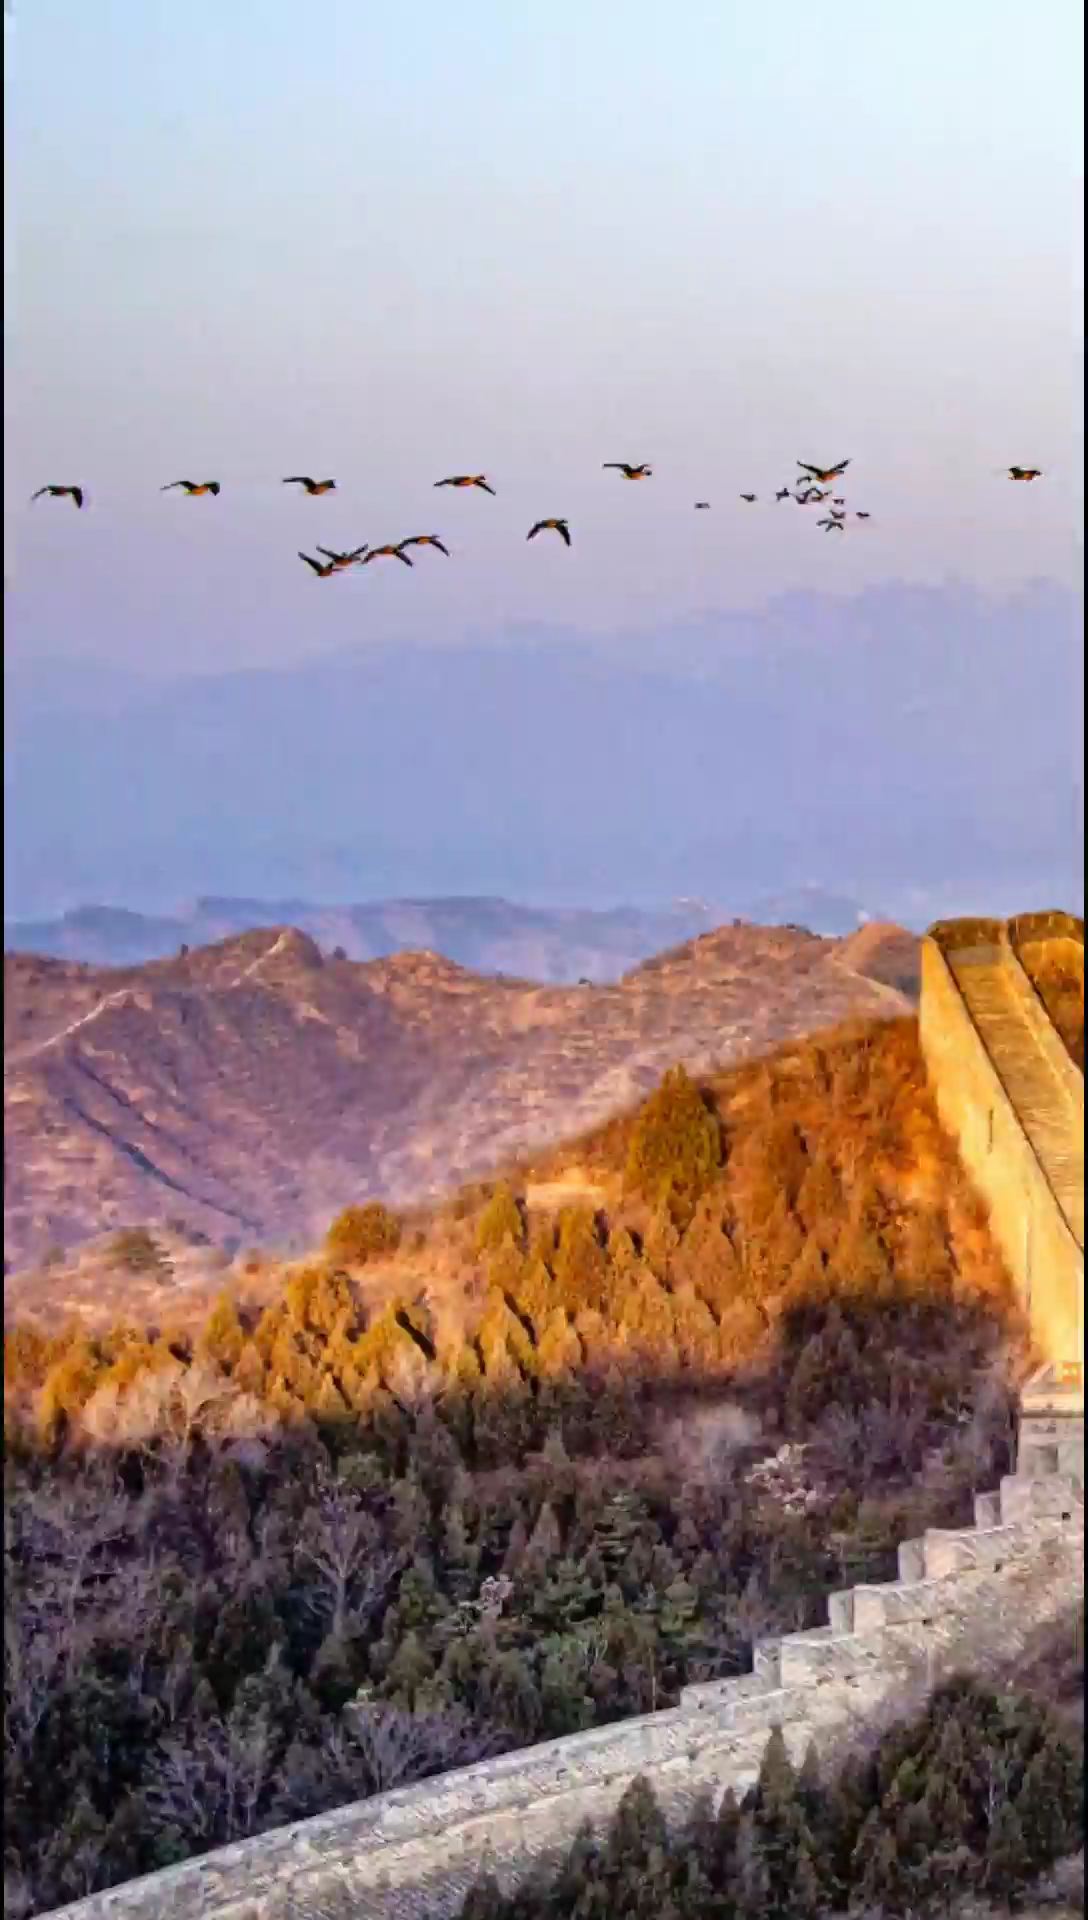 一翅千里之外，大雁飞跃金山岭长城壮观画面。#大美中国 #金山岭长城